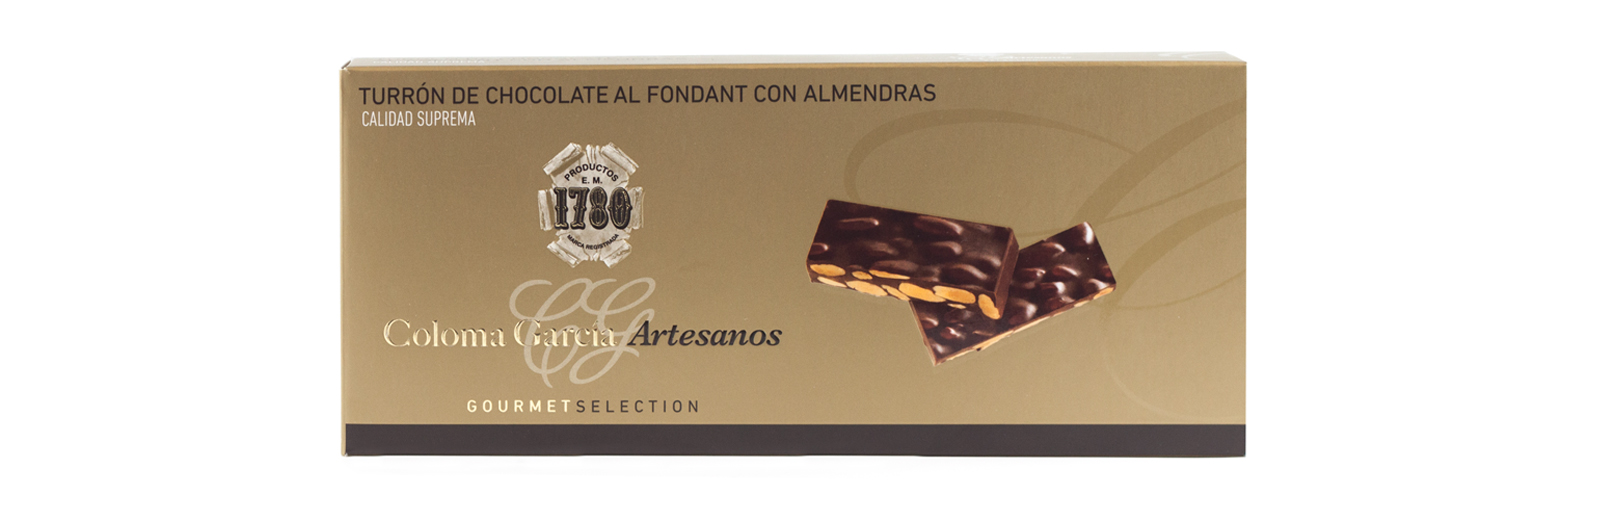 TURRÓN DE CHOCOLATE AL FONDANT CON ALMENDRAS GOURMET